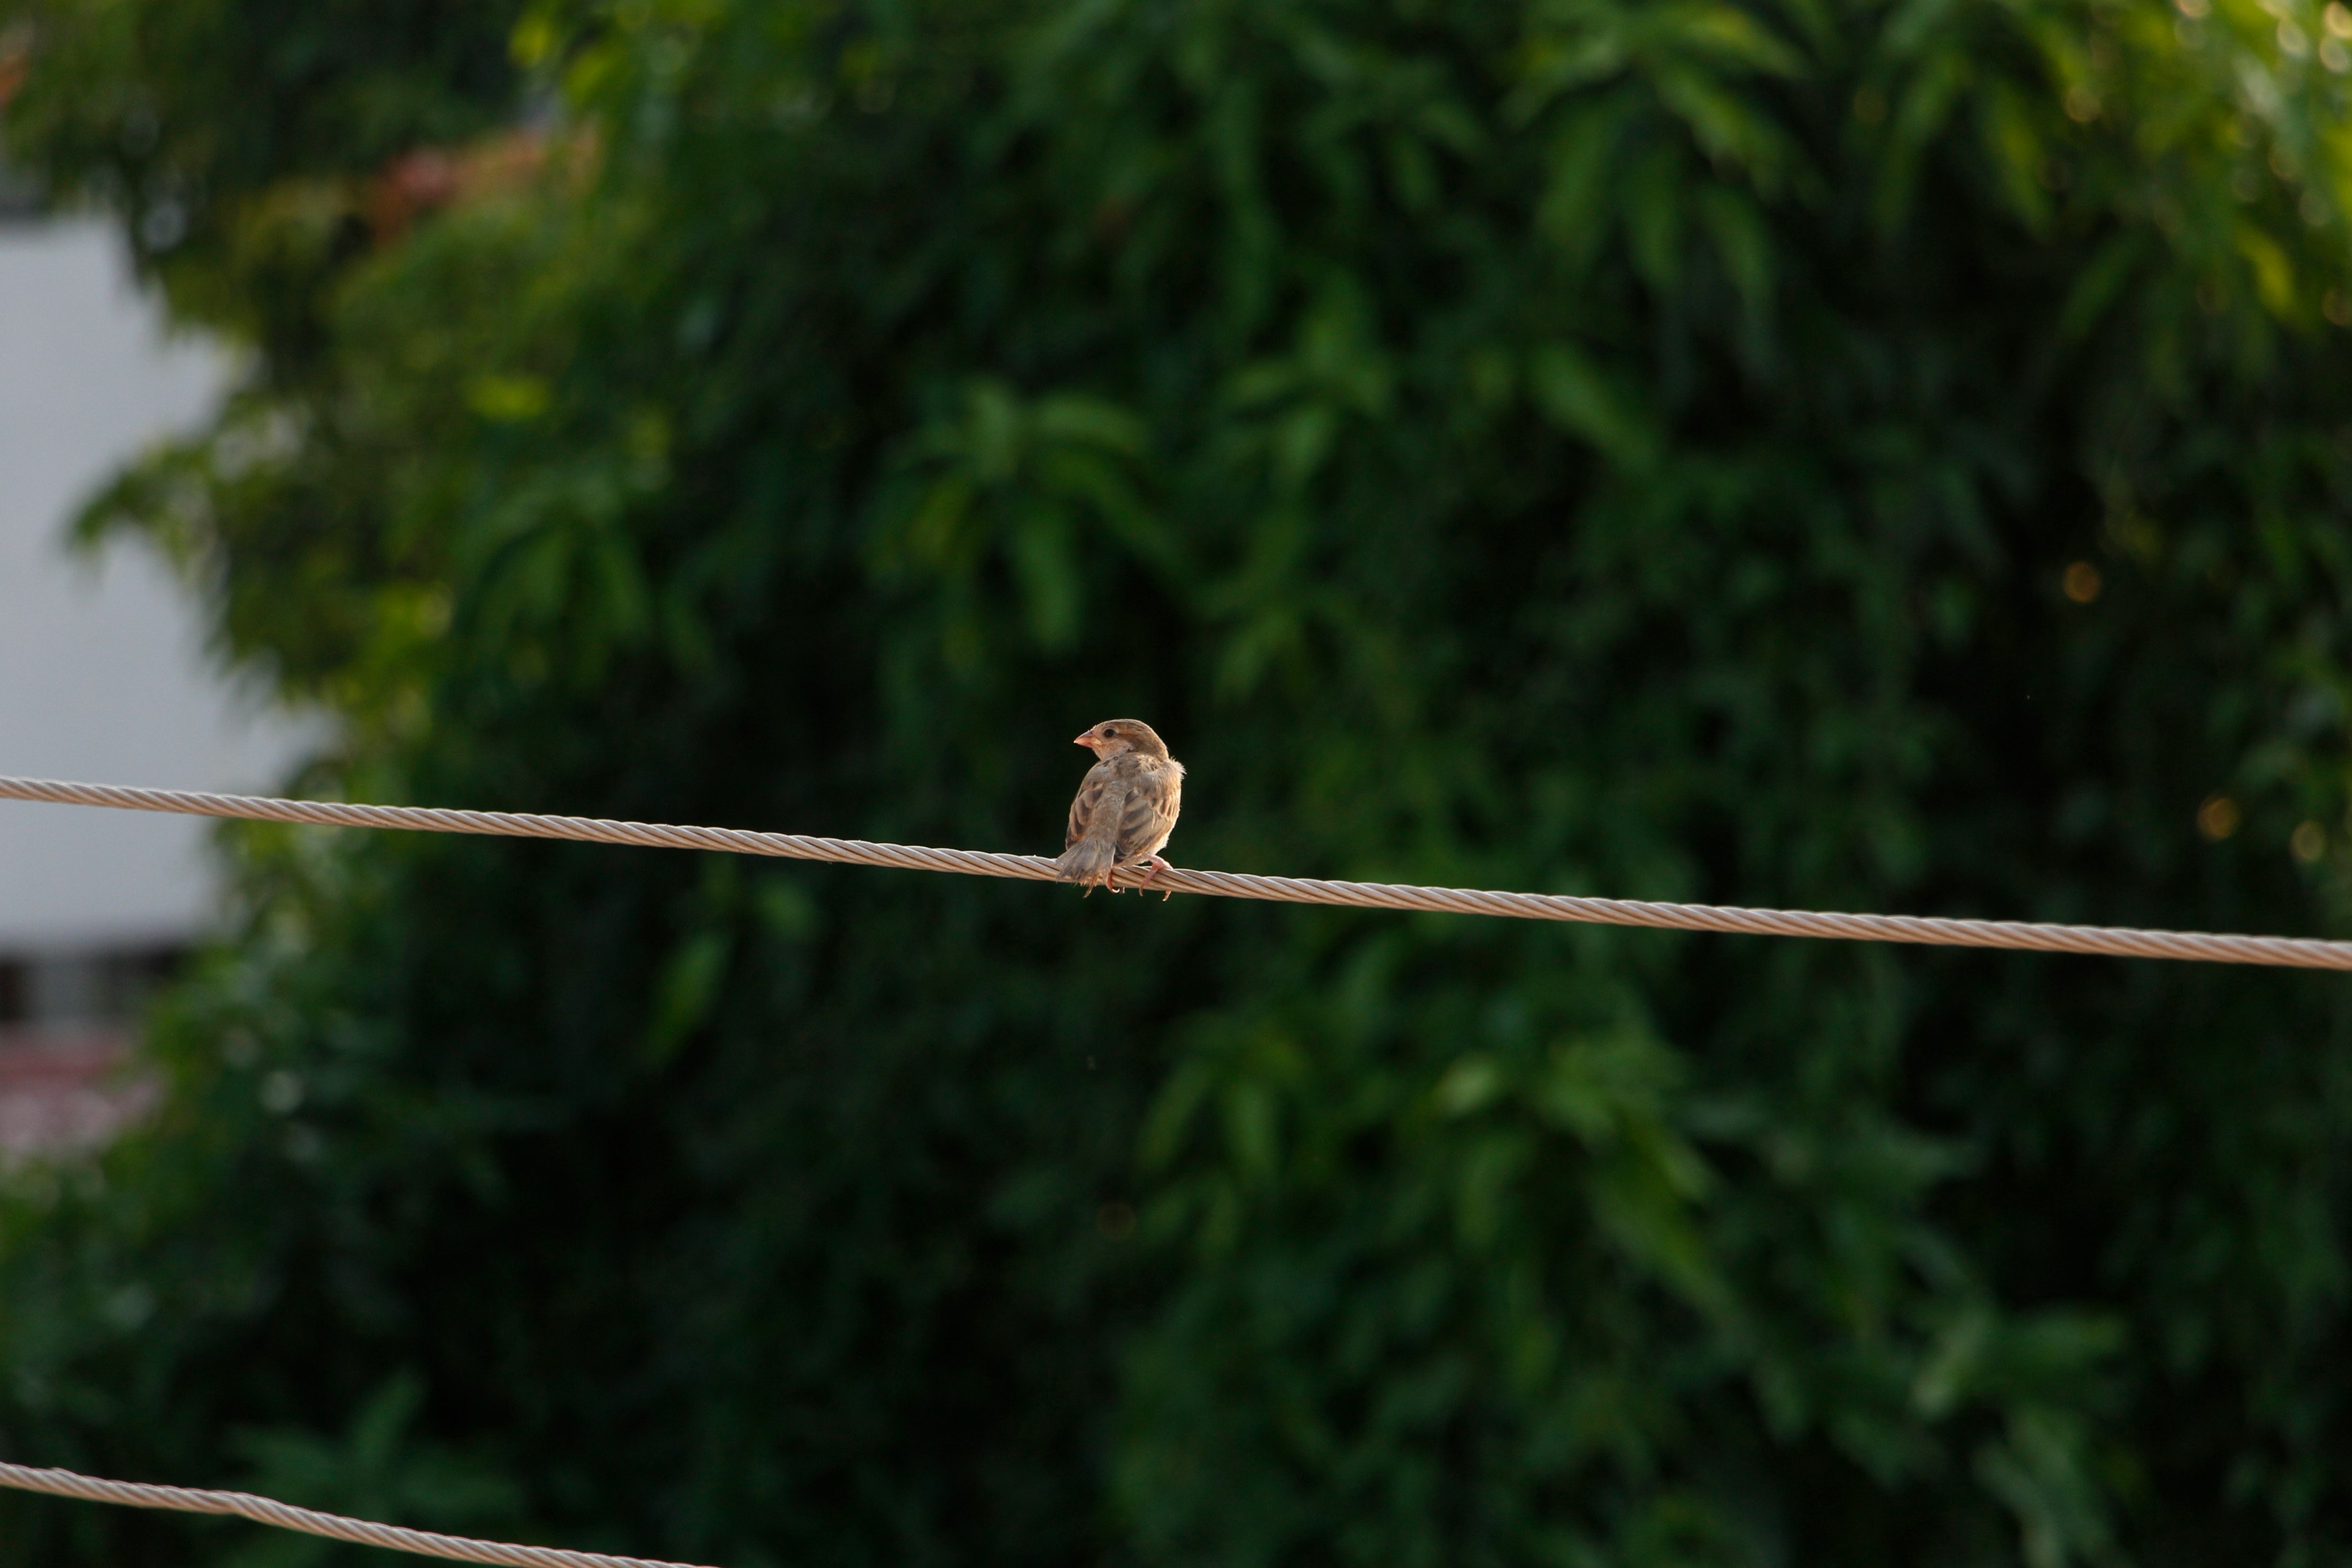 brown bird on brown rope during daytime